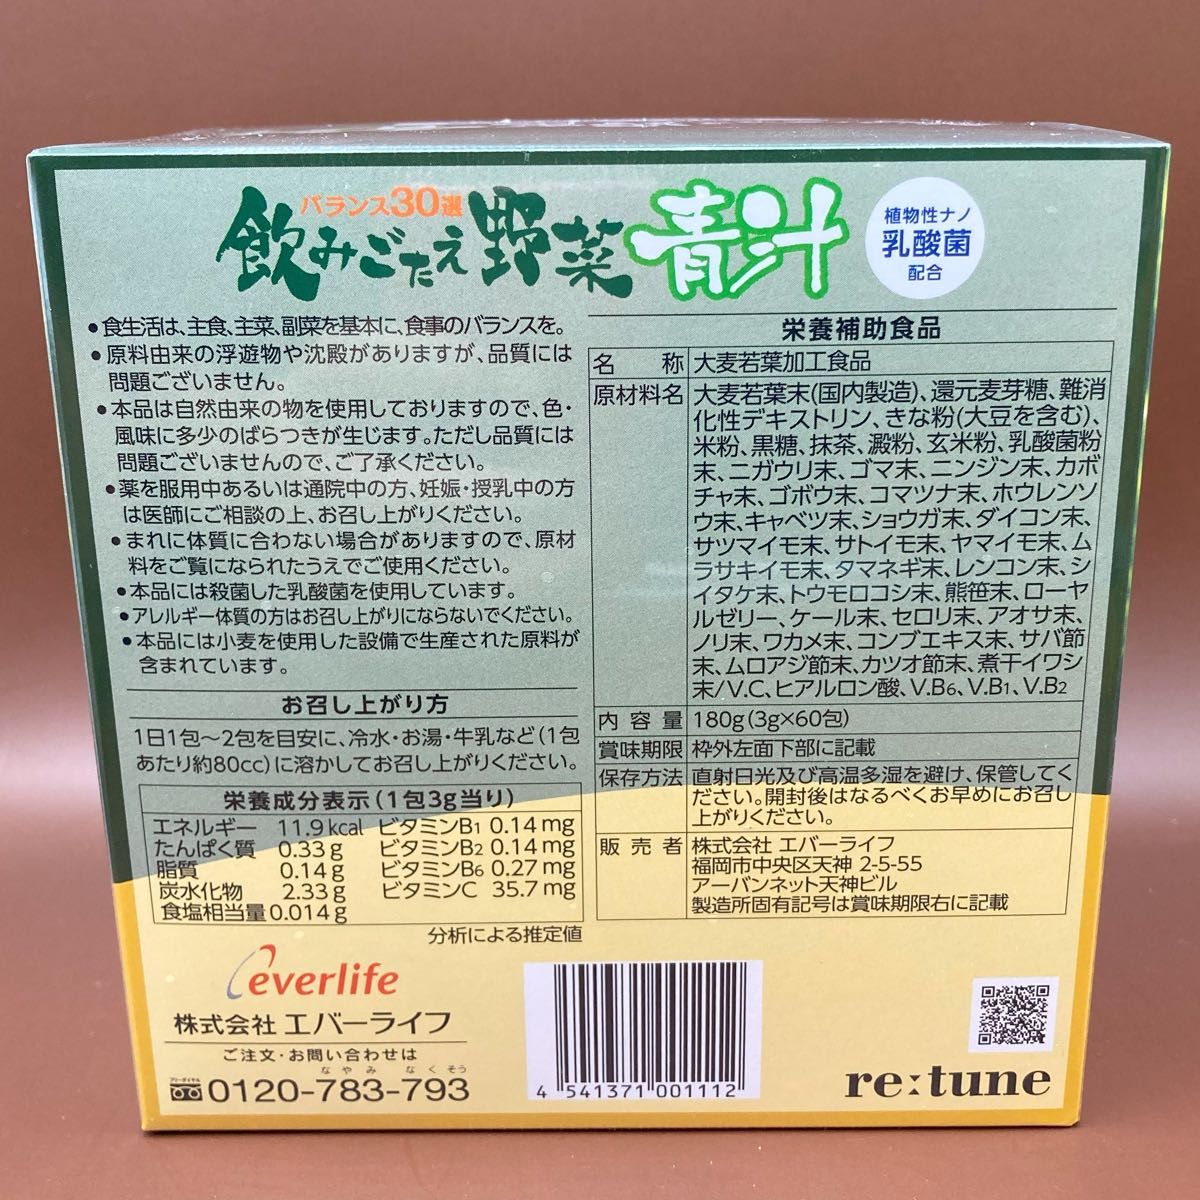 飲みごたえ野菜青汁 (3g×60包) x2個セット